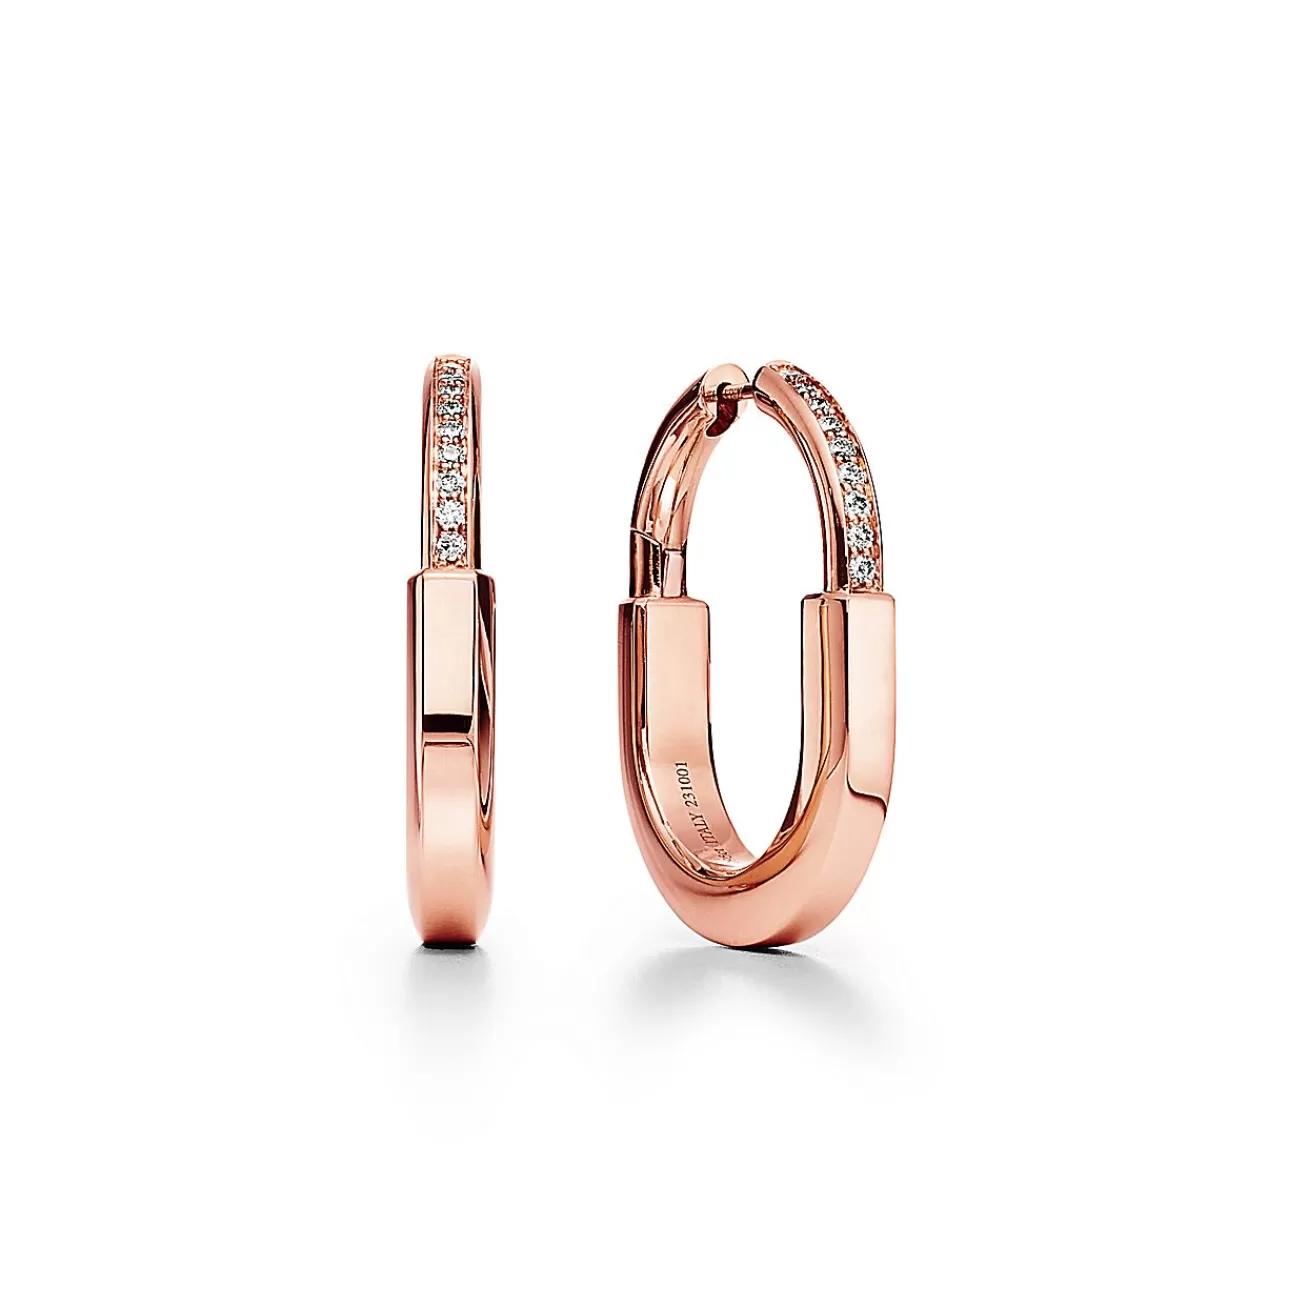 Tiffany & Co. Tiffany Lock Earrings in Rose Gold with Diamonds, Medium | ^ Earrings | Hoop Earrings